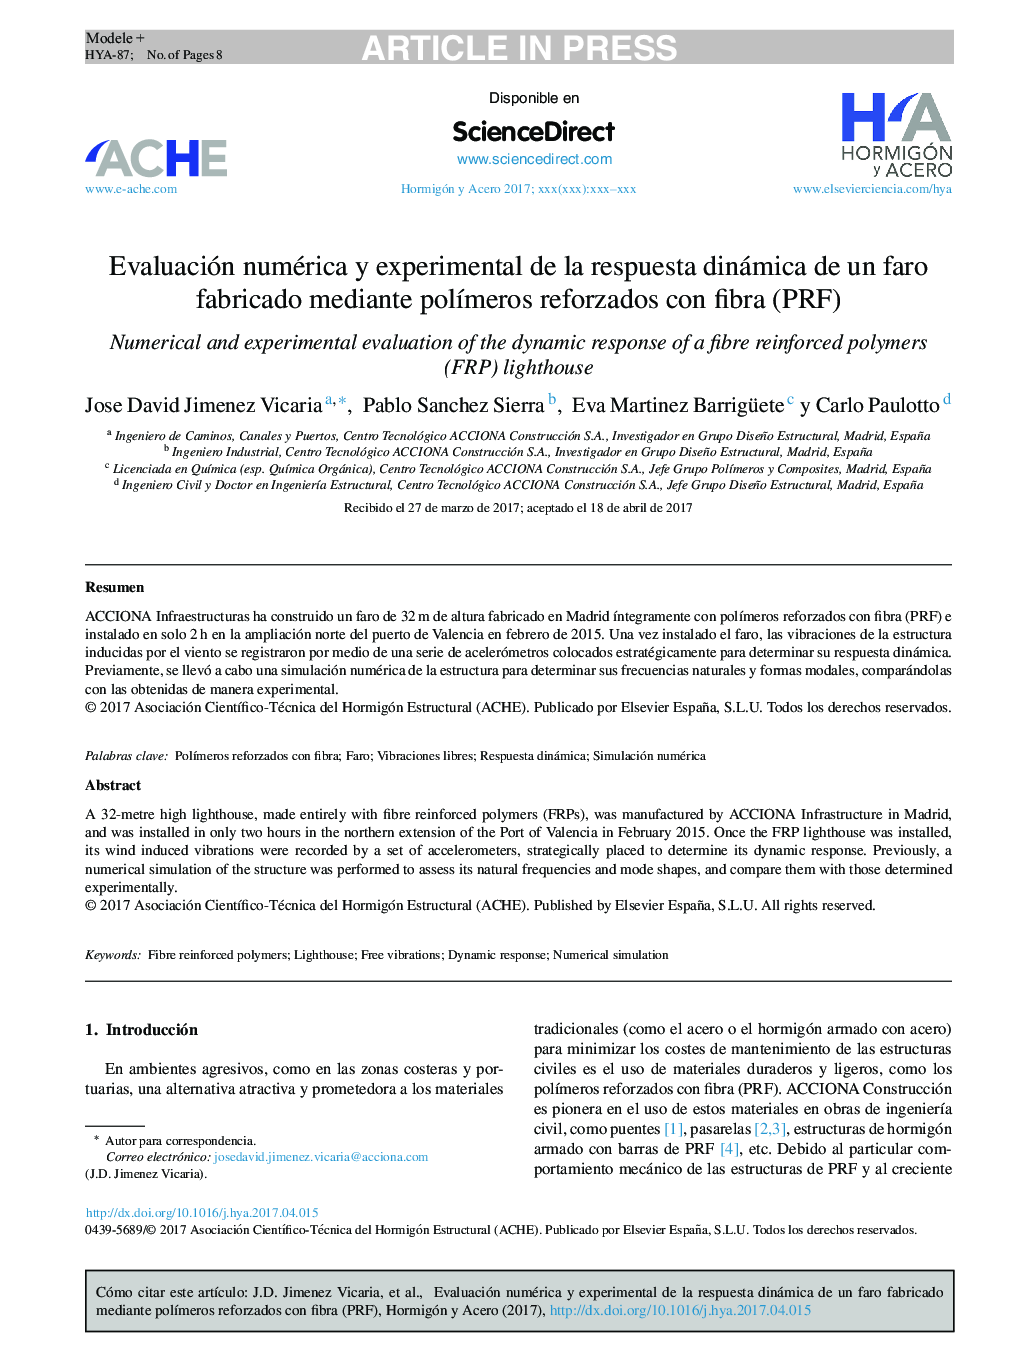 Evaluación numérica y experimental de la respuesta dinámica de un faro fabricado mediante polÃ­meros reforzados con fibra (PRF)